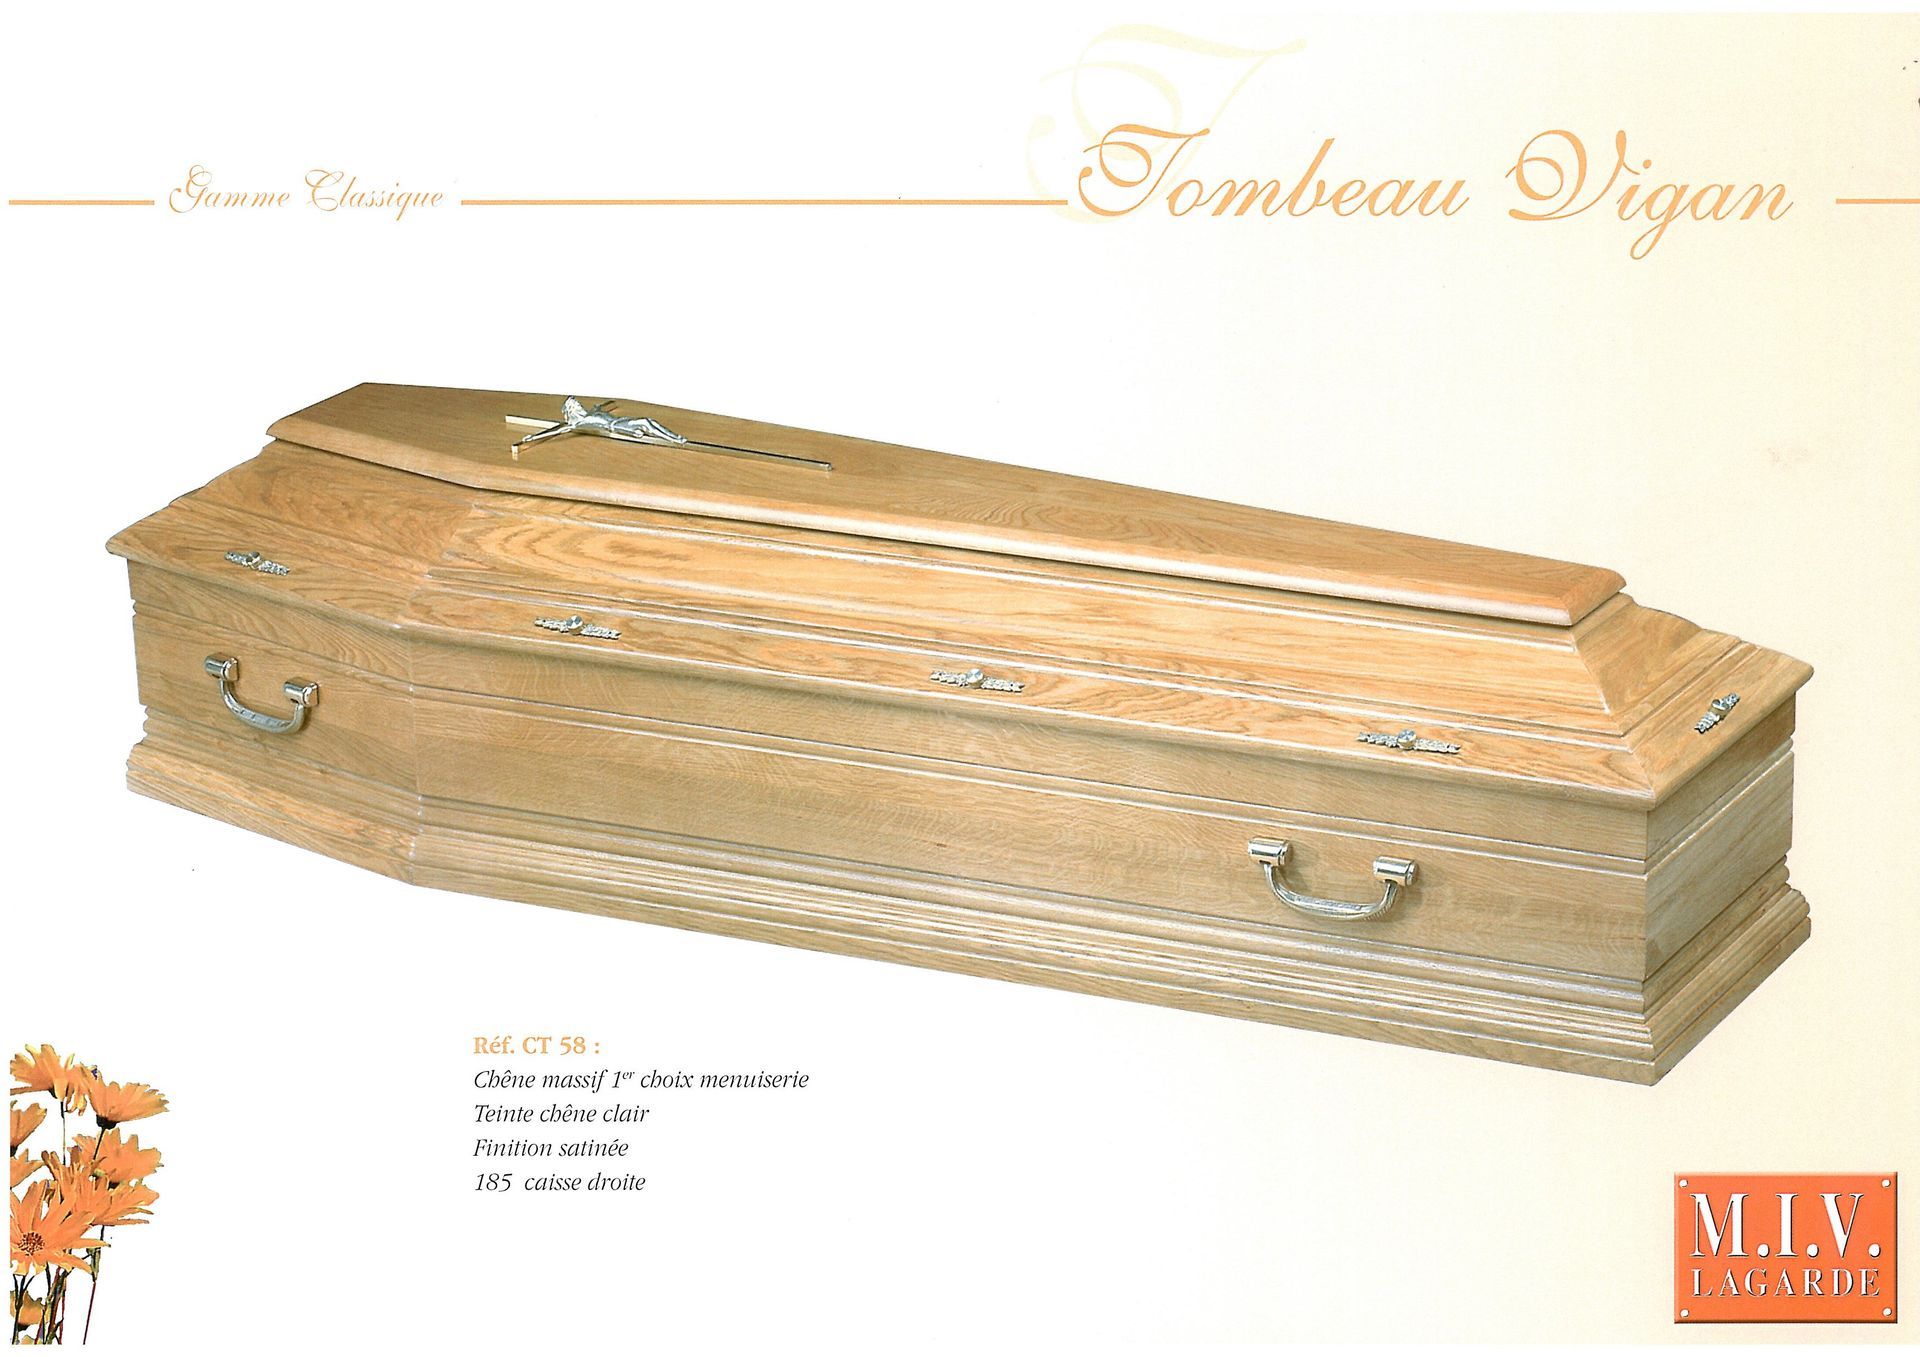 Cercueil modèle Vigan